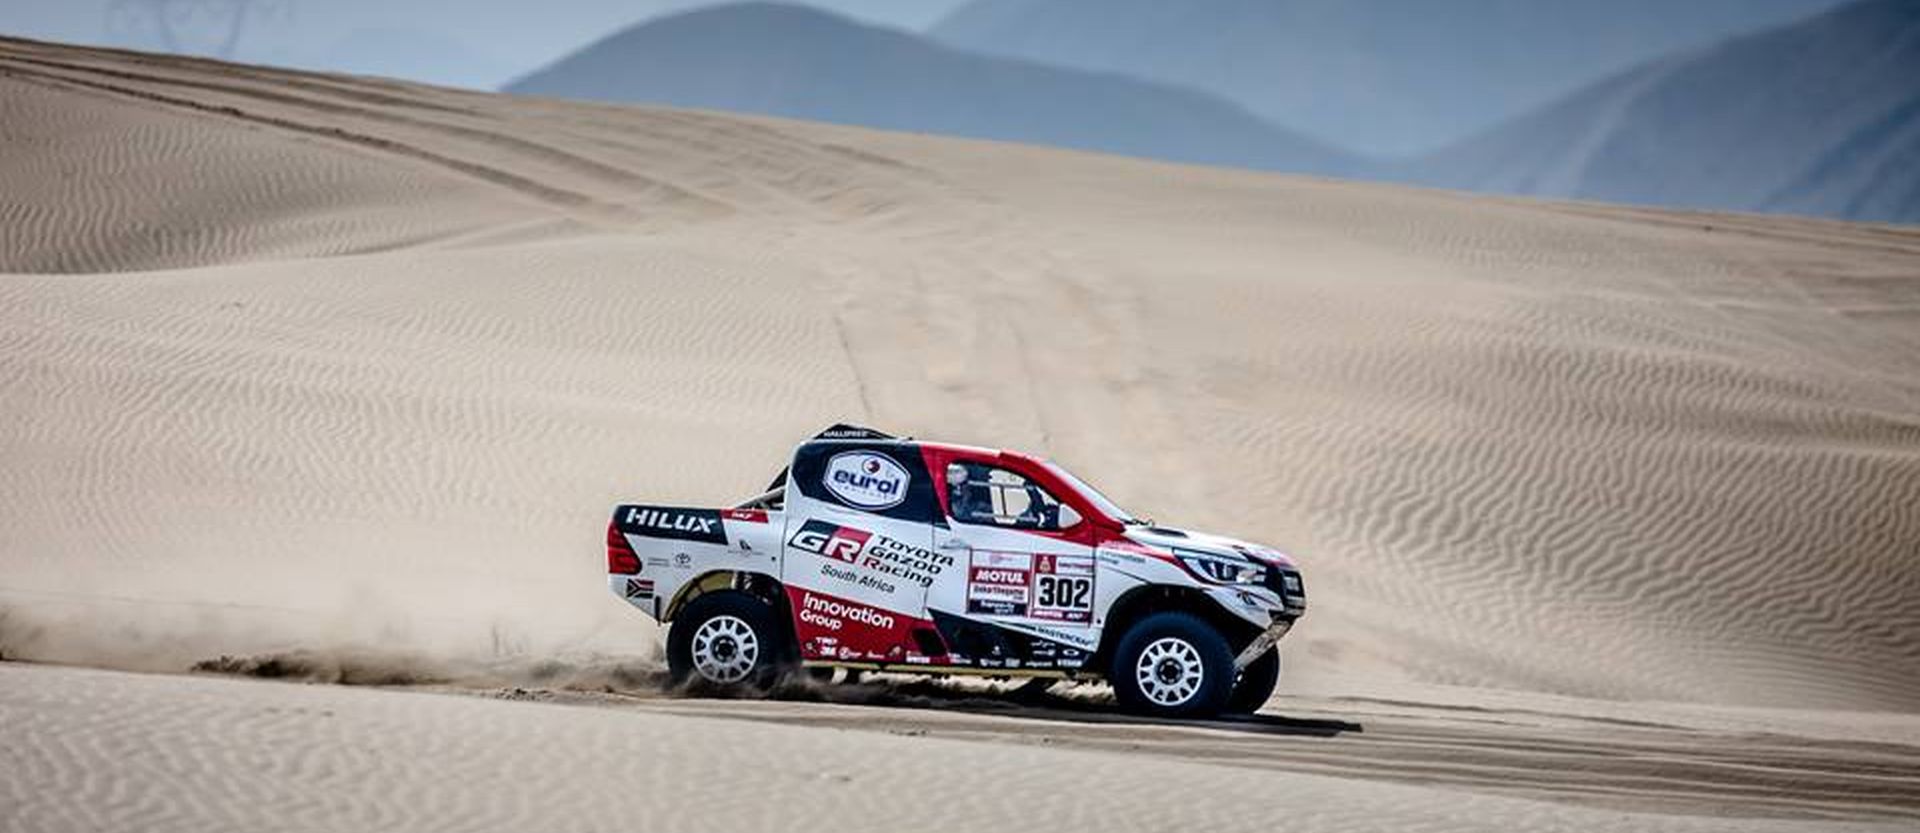 Dakar 2019 - pierwsze starcie i Nasser Al-Attiyah Toyotą Hilux na podium!